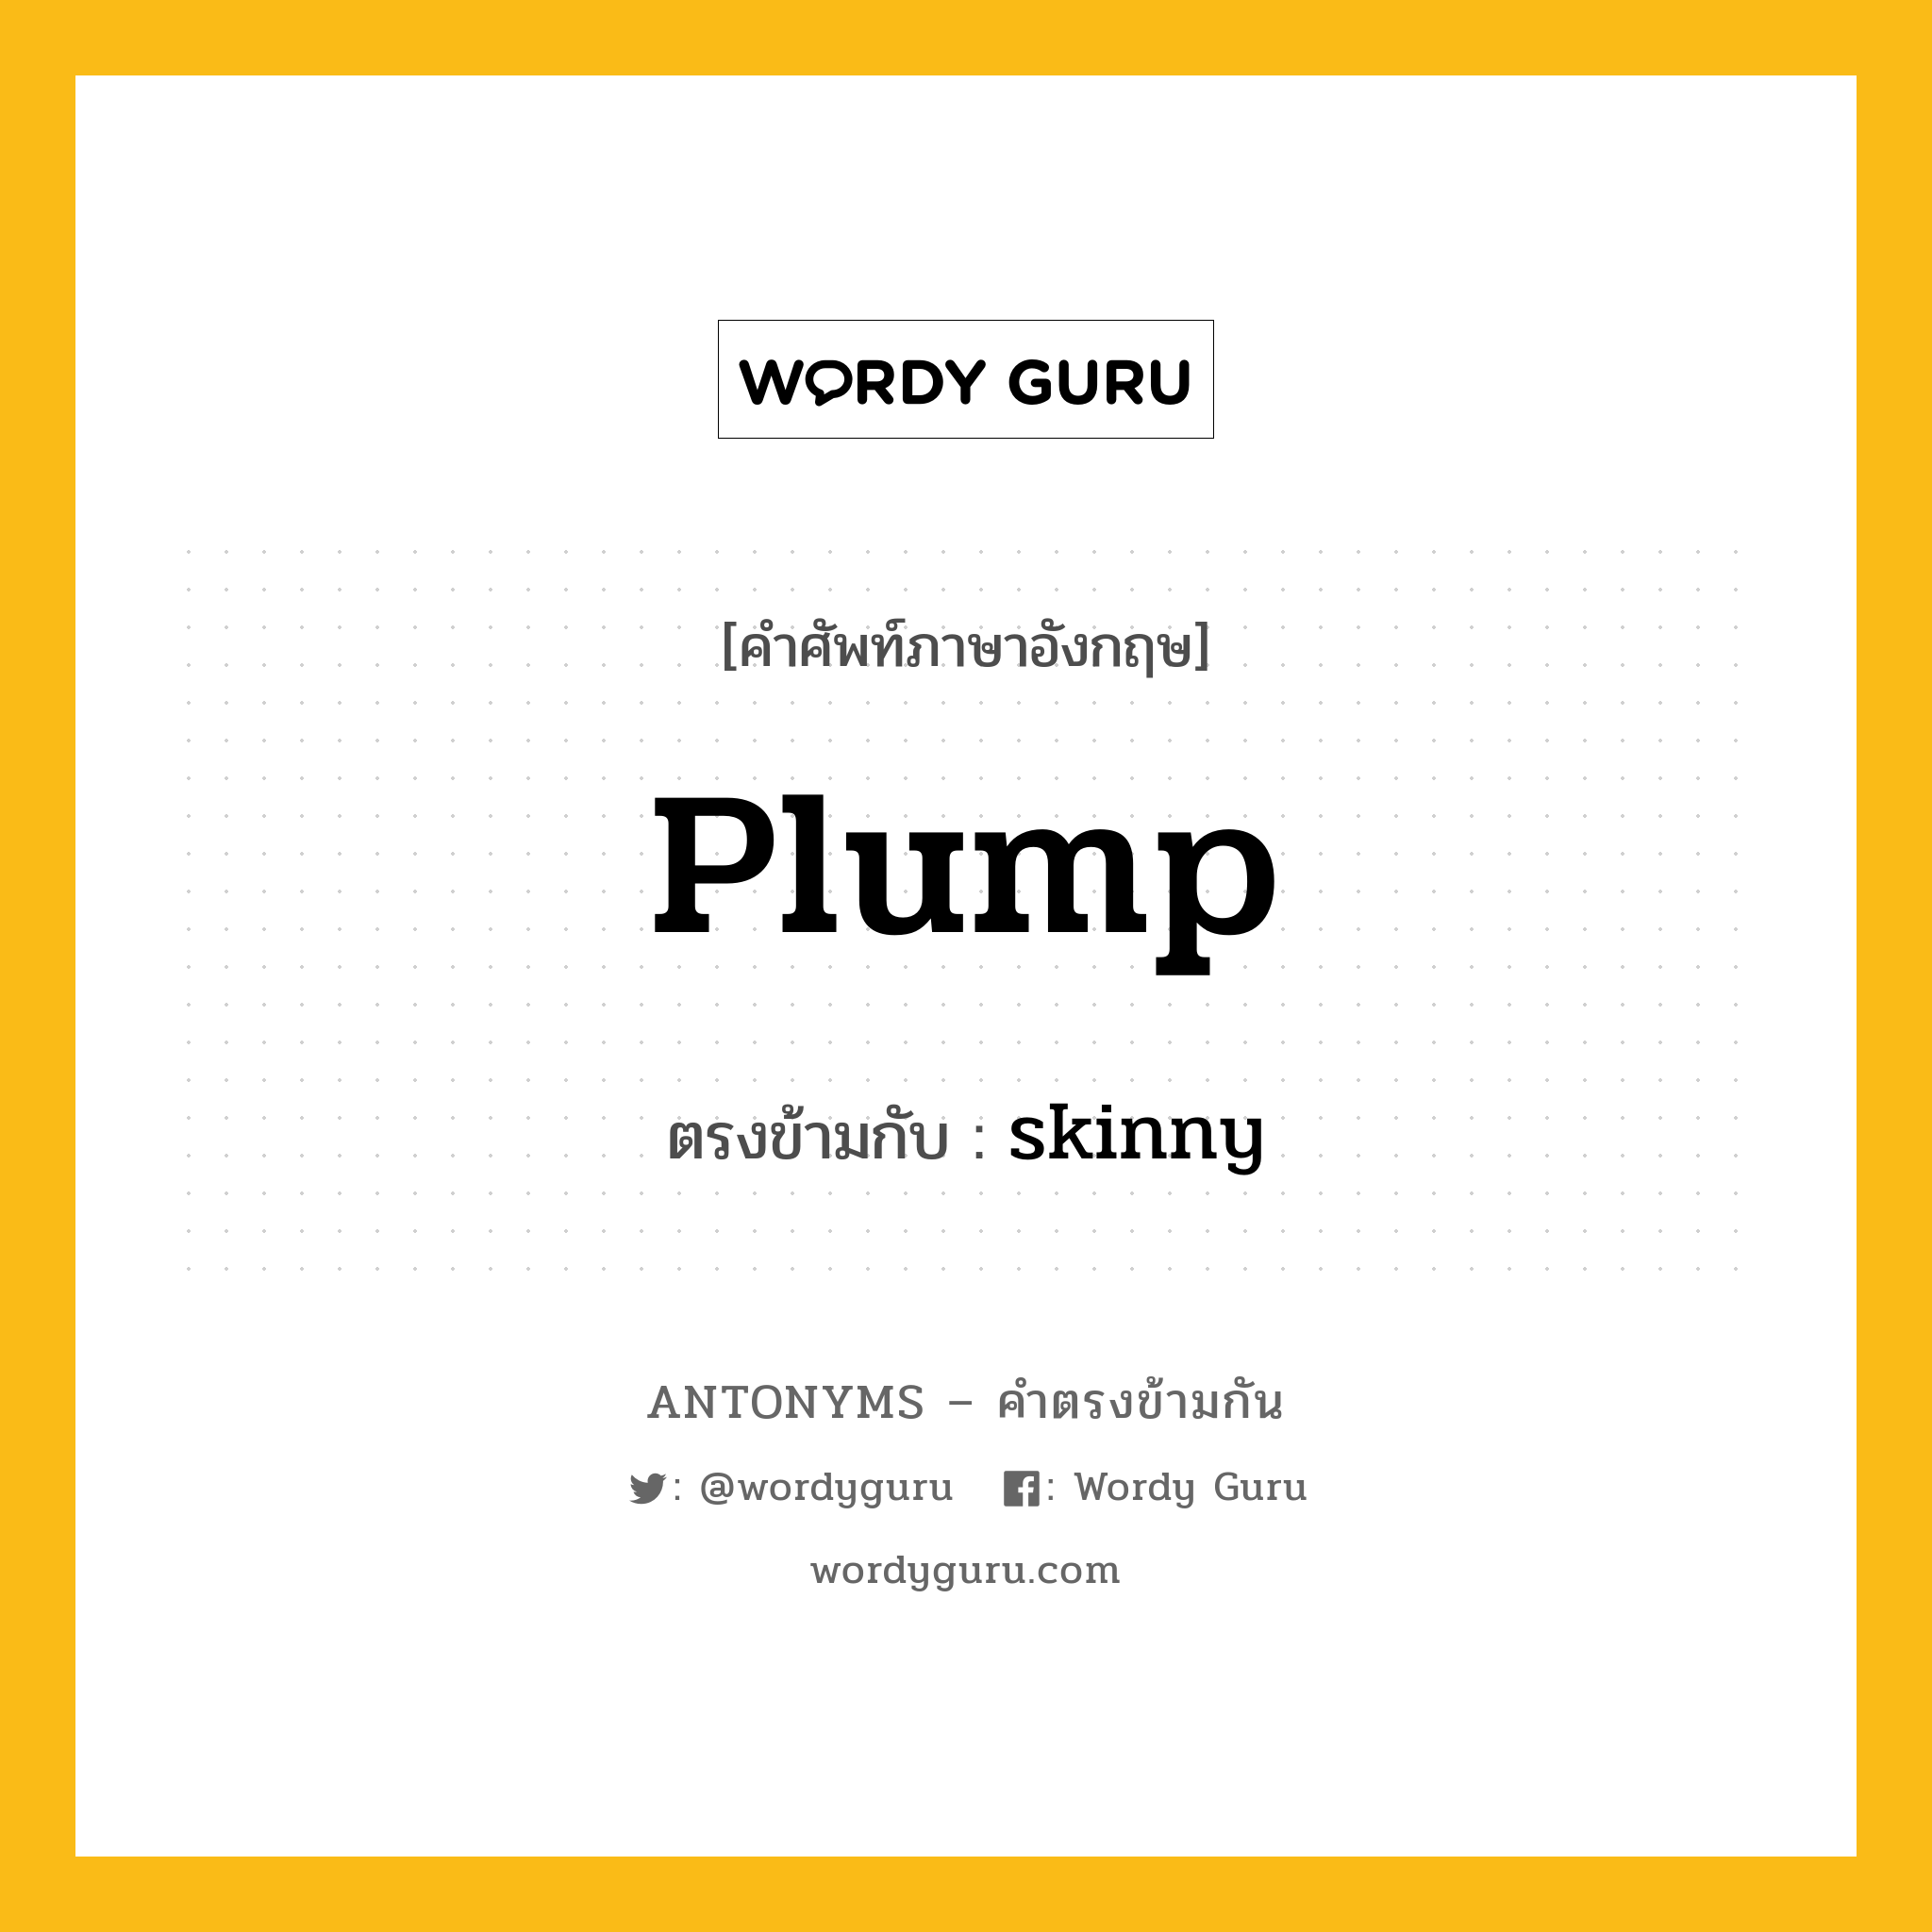 plump เป็นคำตรงข้ามกับคำไหนบ้าง?, คำศัพท์ภาษาอังกฤษ plump ตรงข้ามกับ skinny หมวด skinny